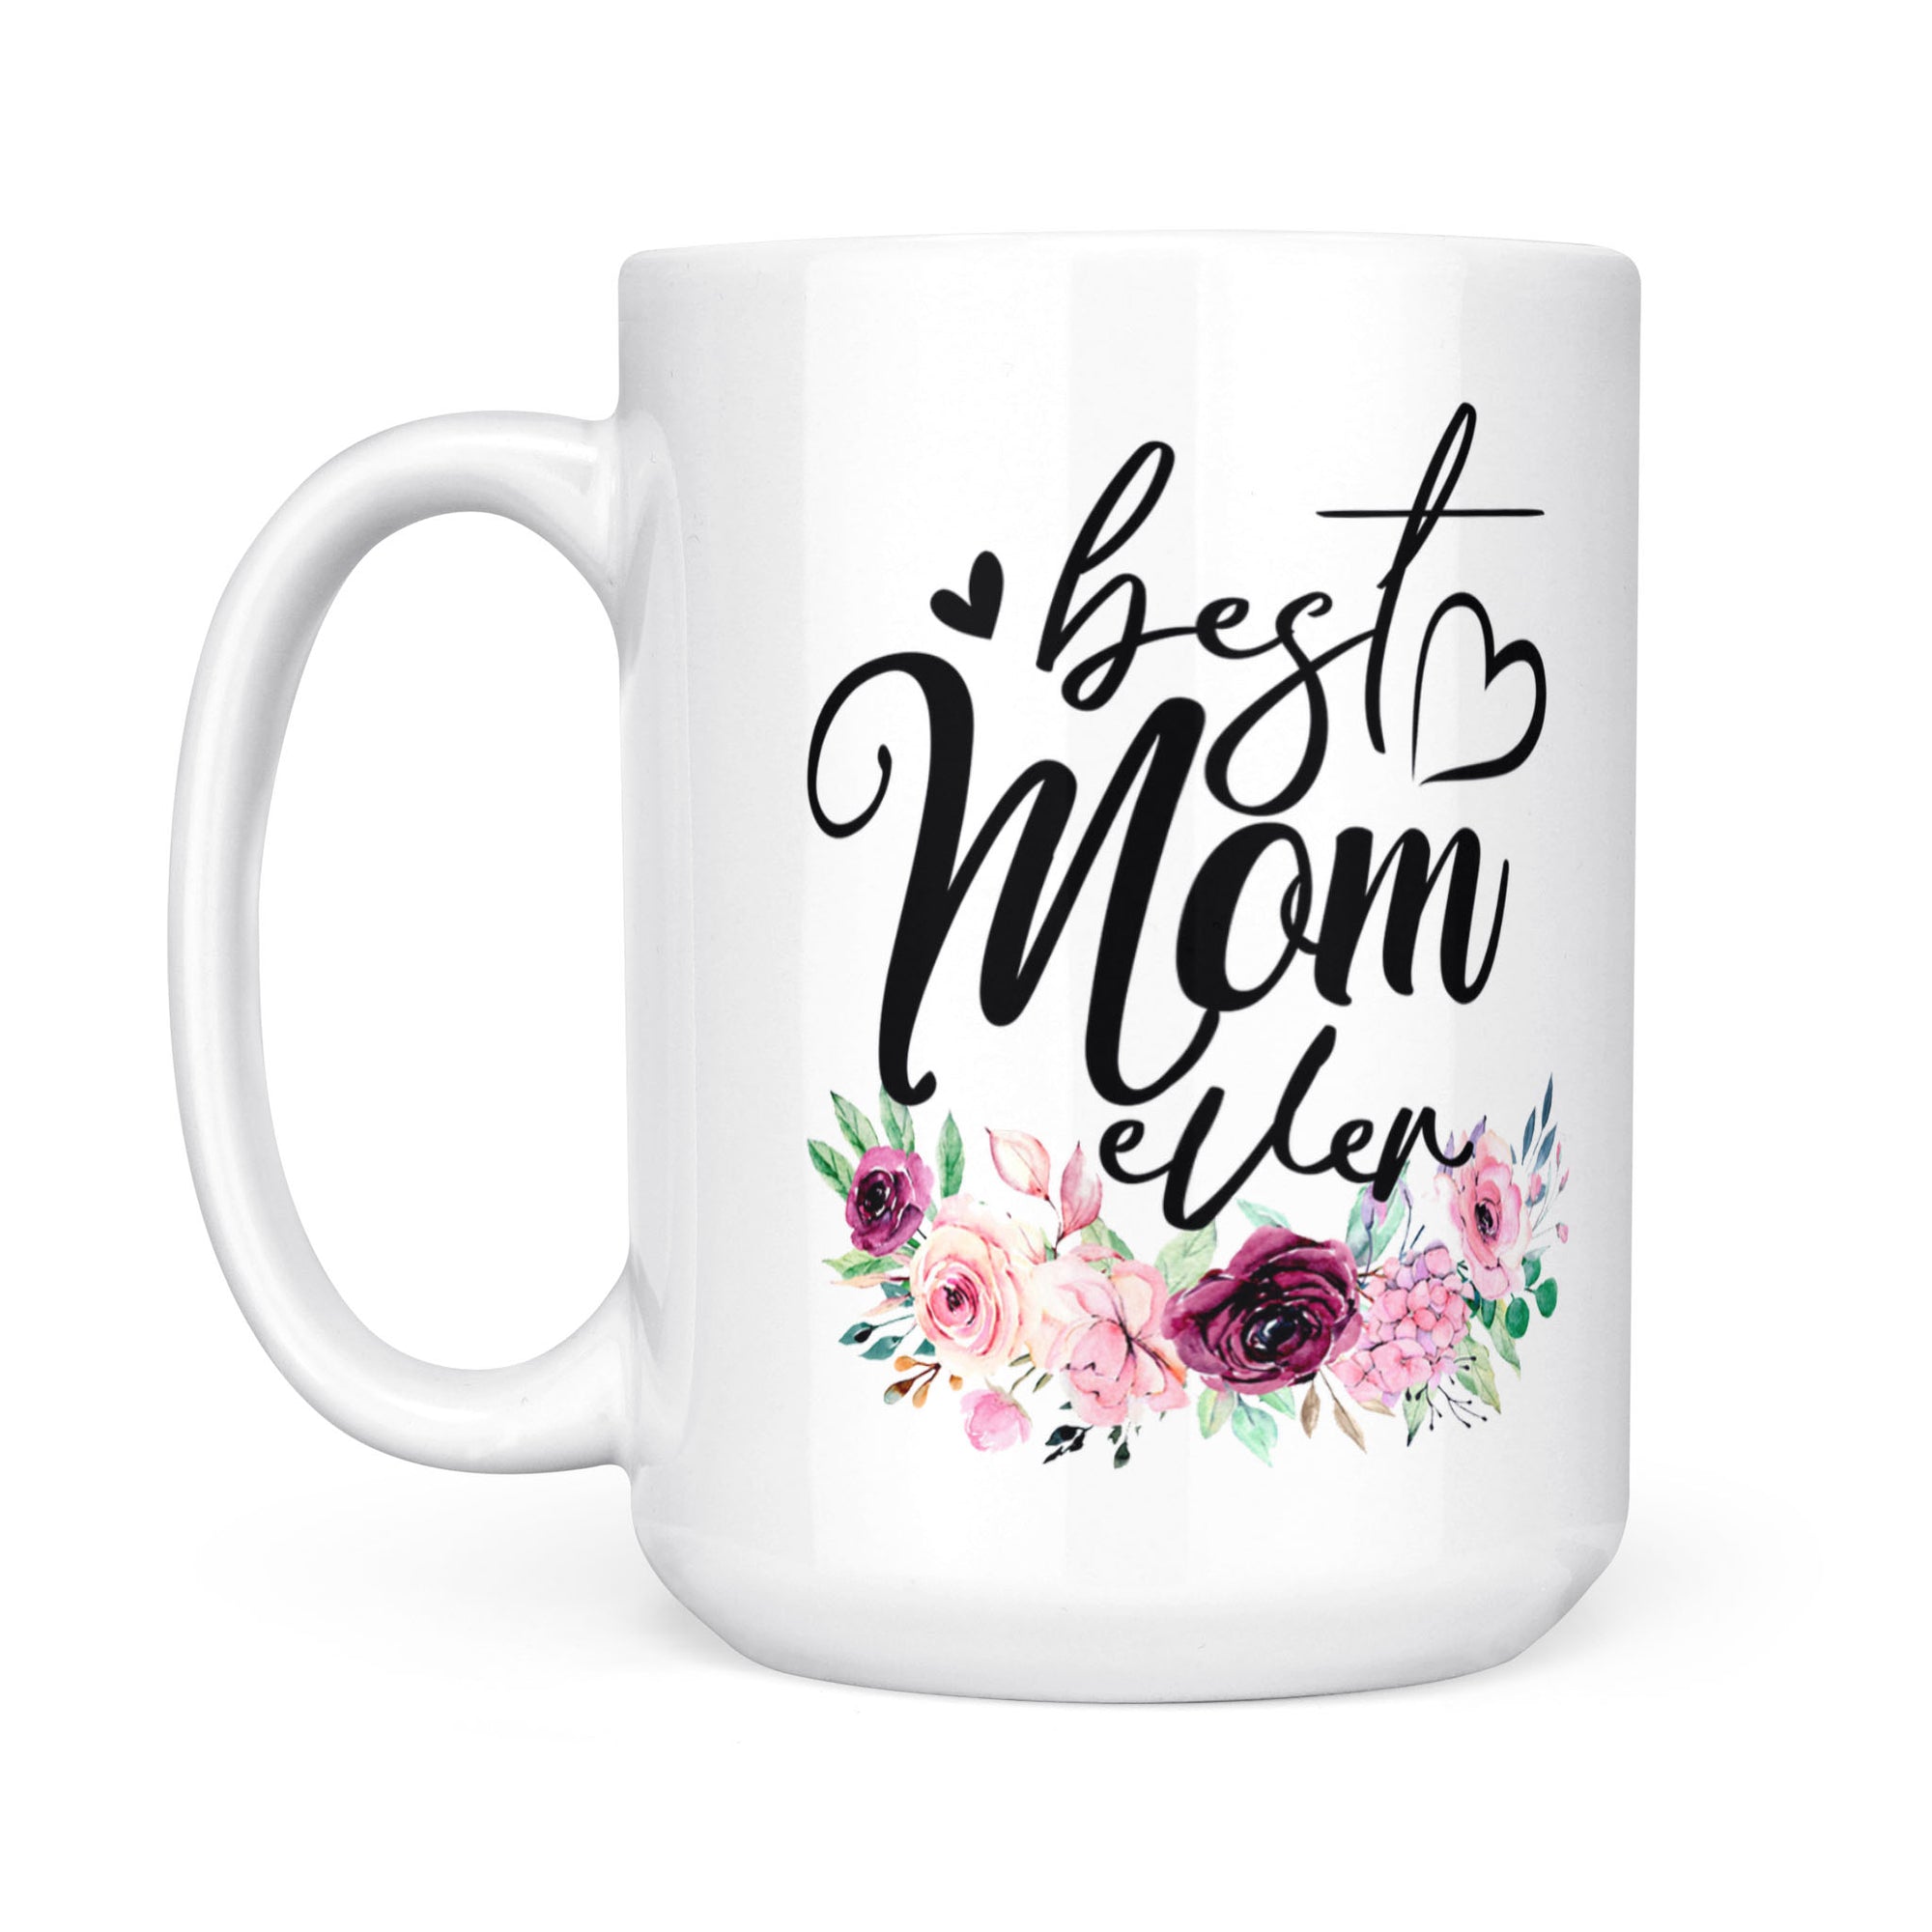 Best Mom Ever - White Mug MG12